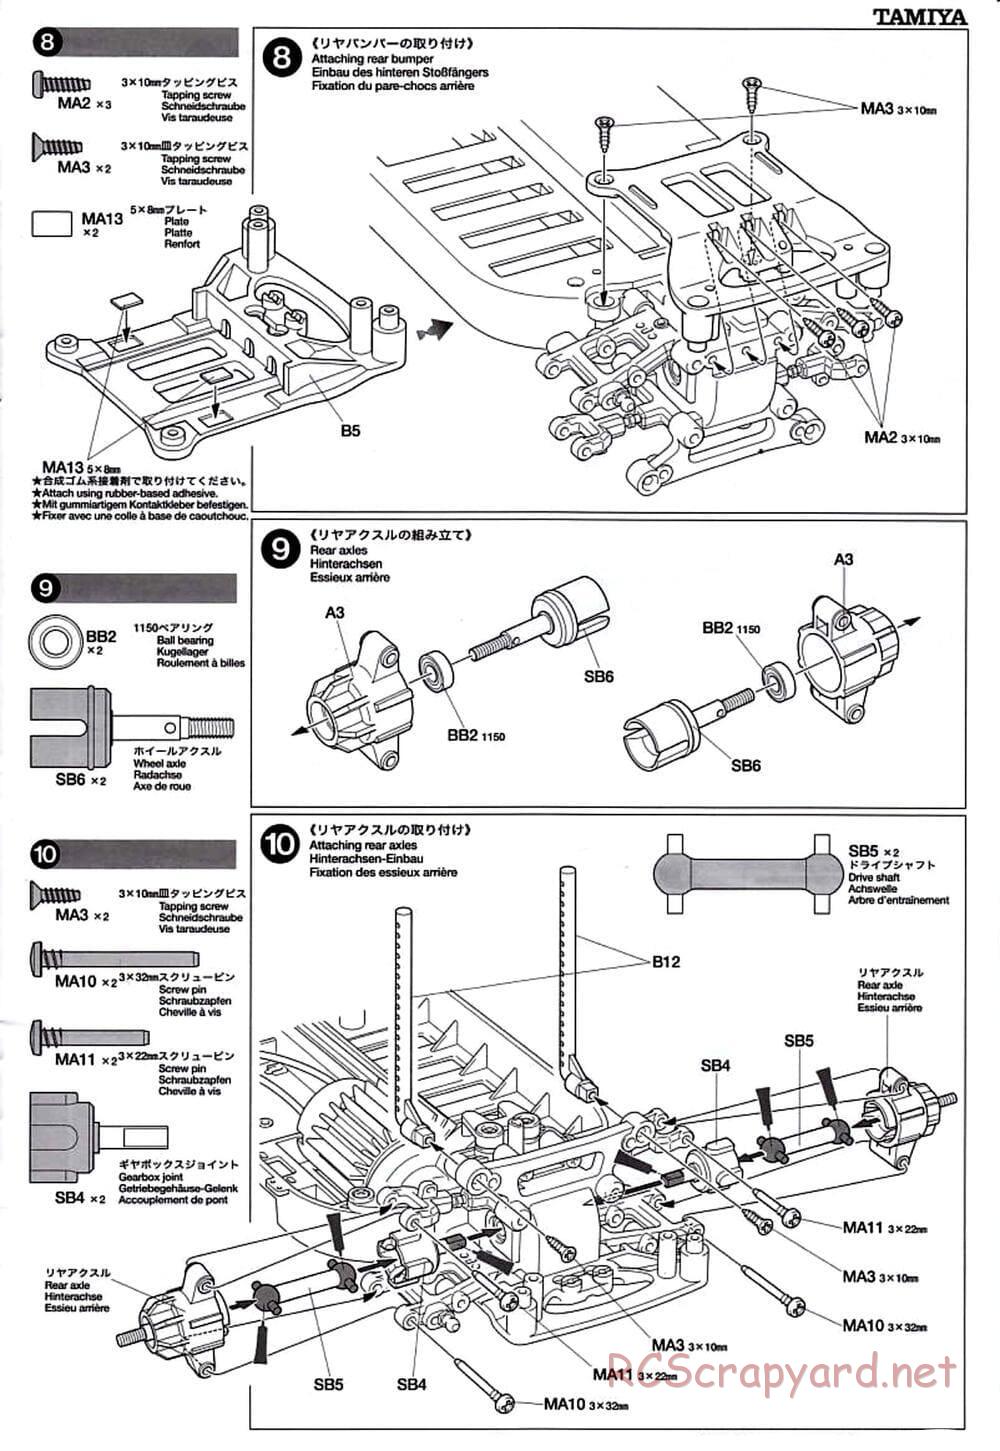 Tamiya - TT-01D Chassis - Manual - Page 7